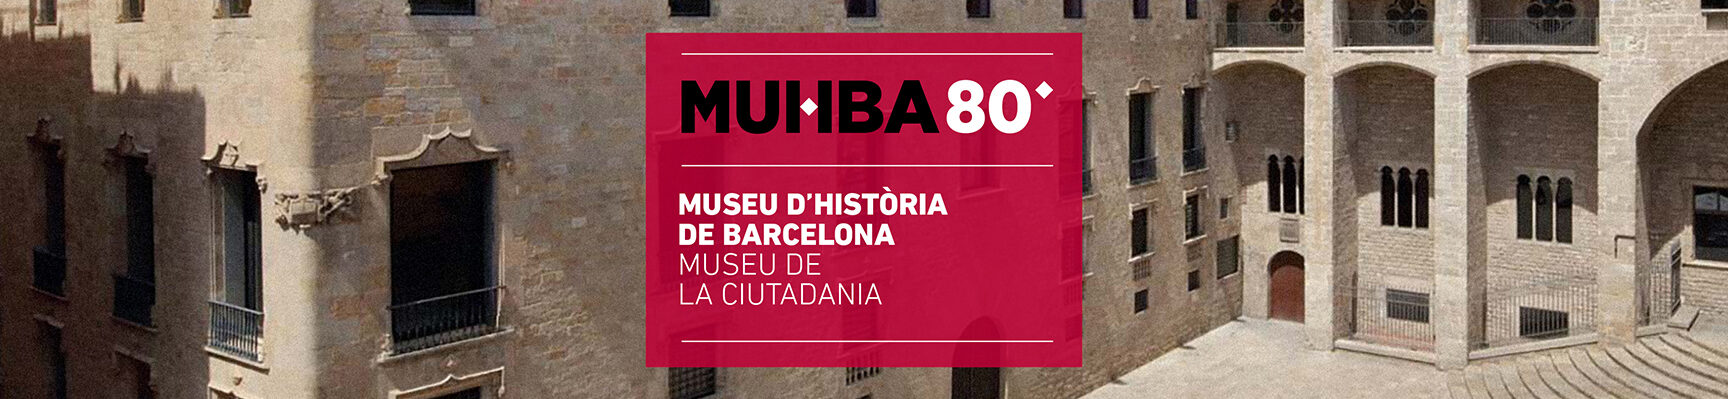 MUSEU DʼHISTÒRIA DE LA CIUTAT DE BARCELONA		Barcelona	Barcelona	Museo